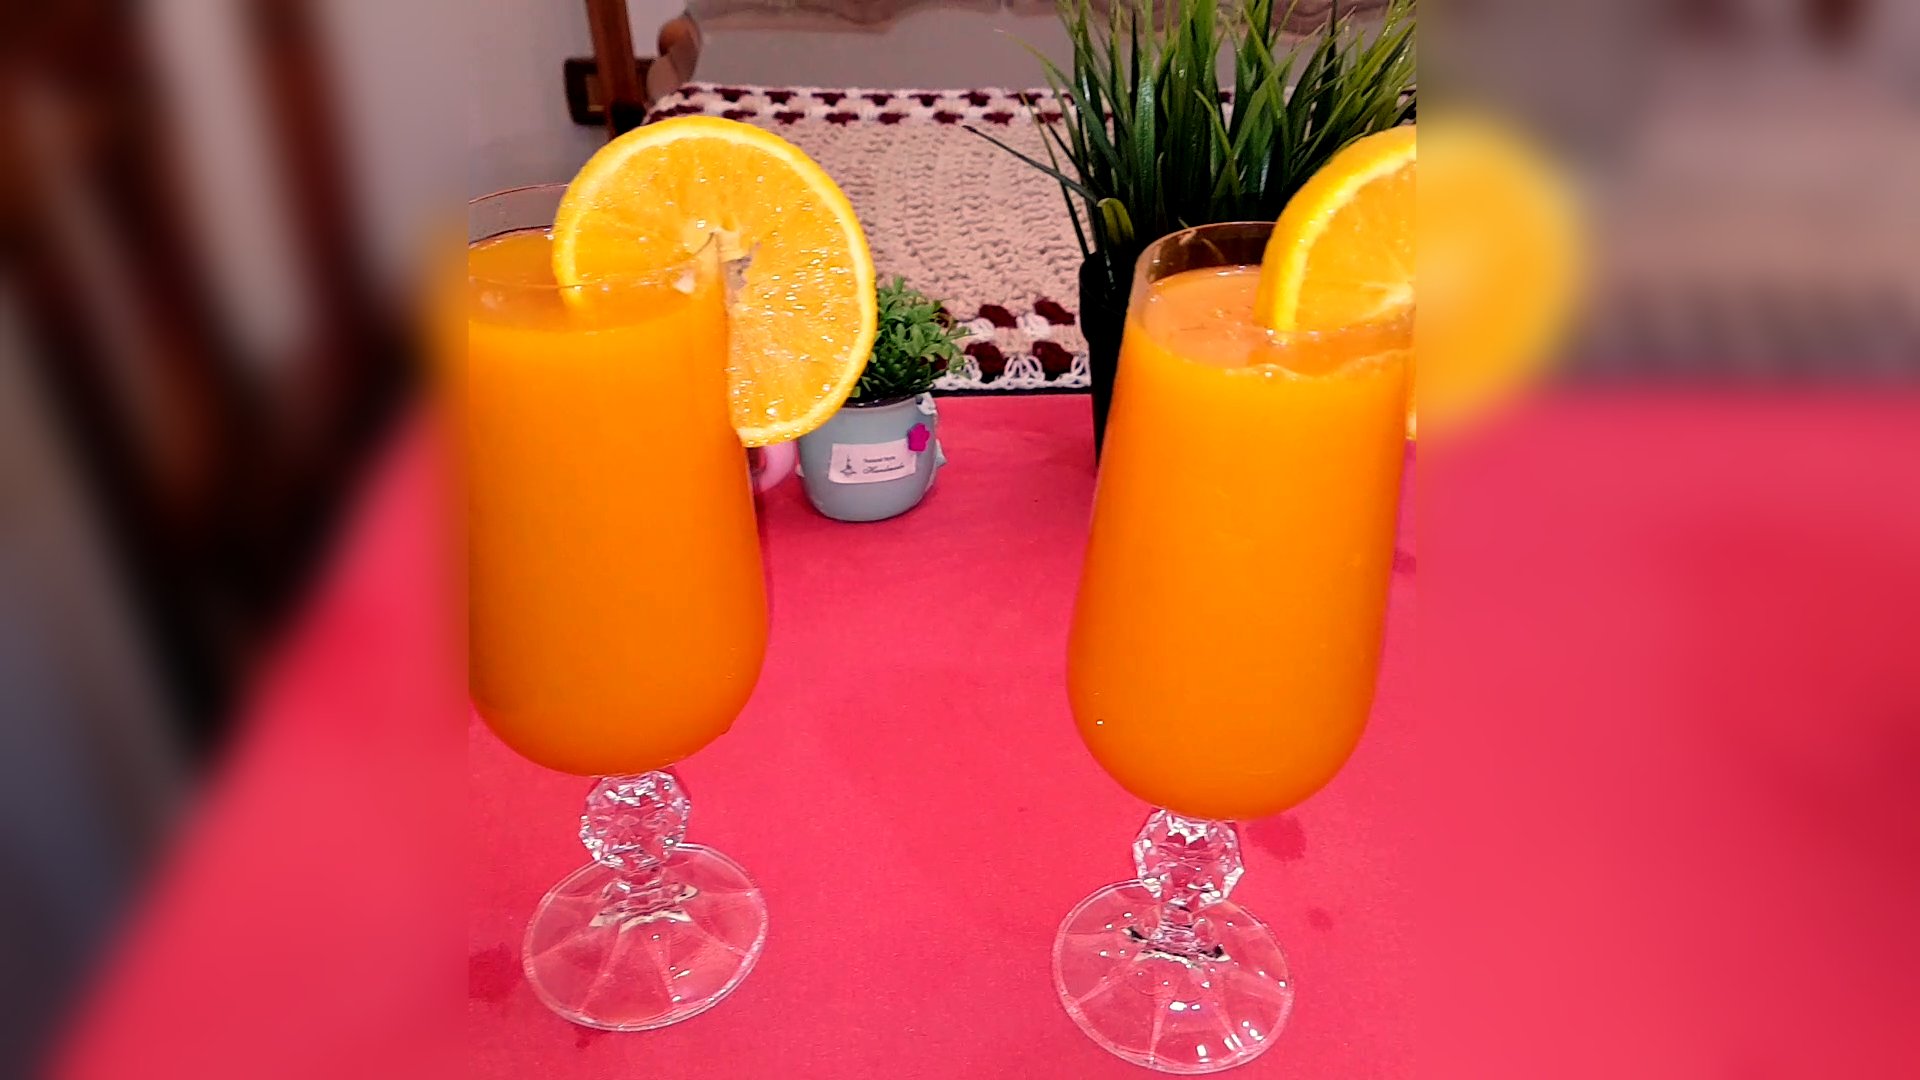 طريقة عمل عصير البرتقال بالجزر الرائع بالفيديو